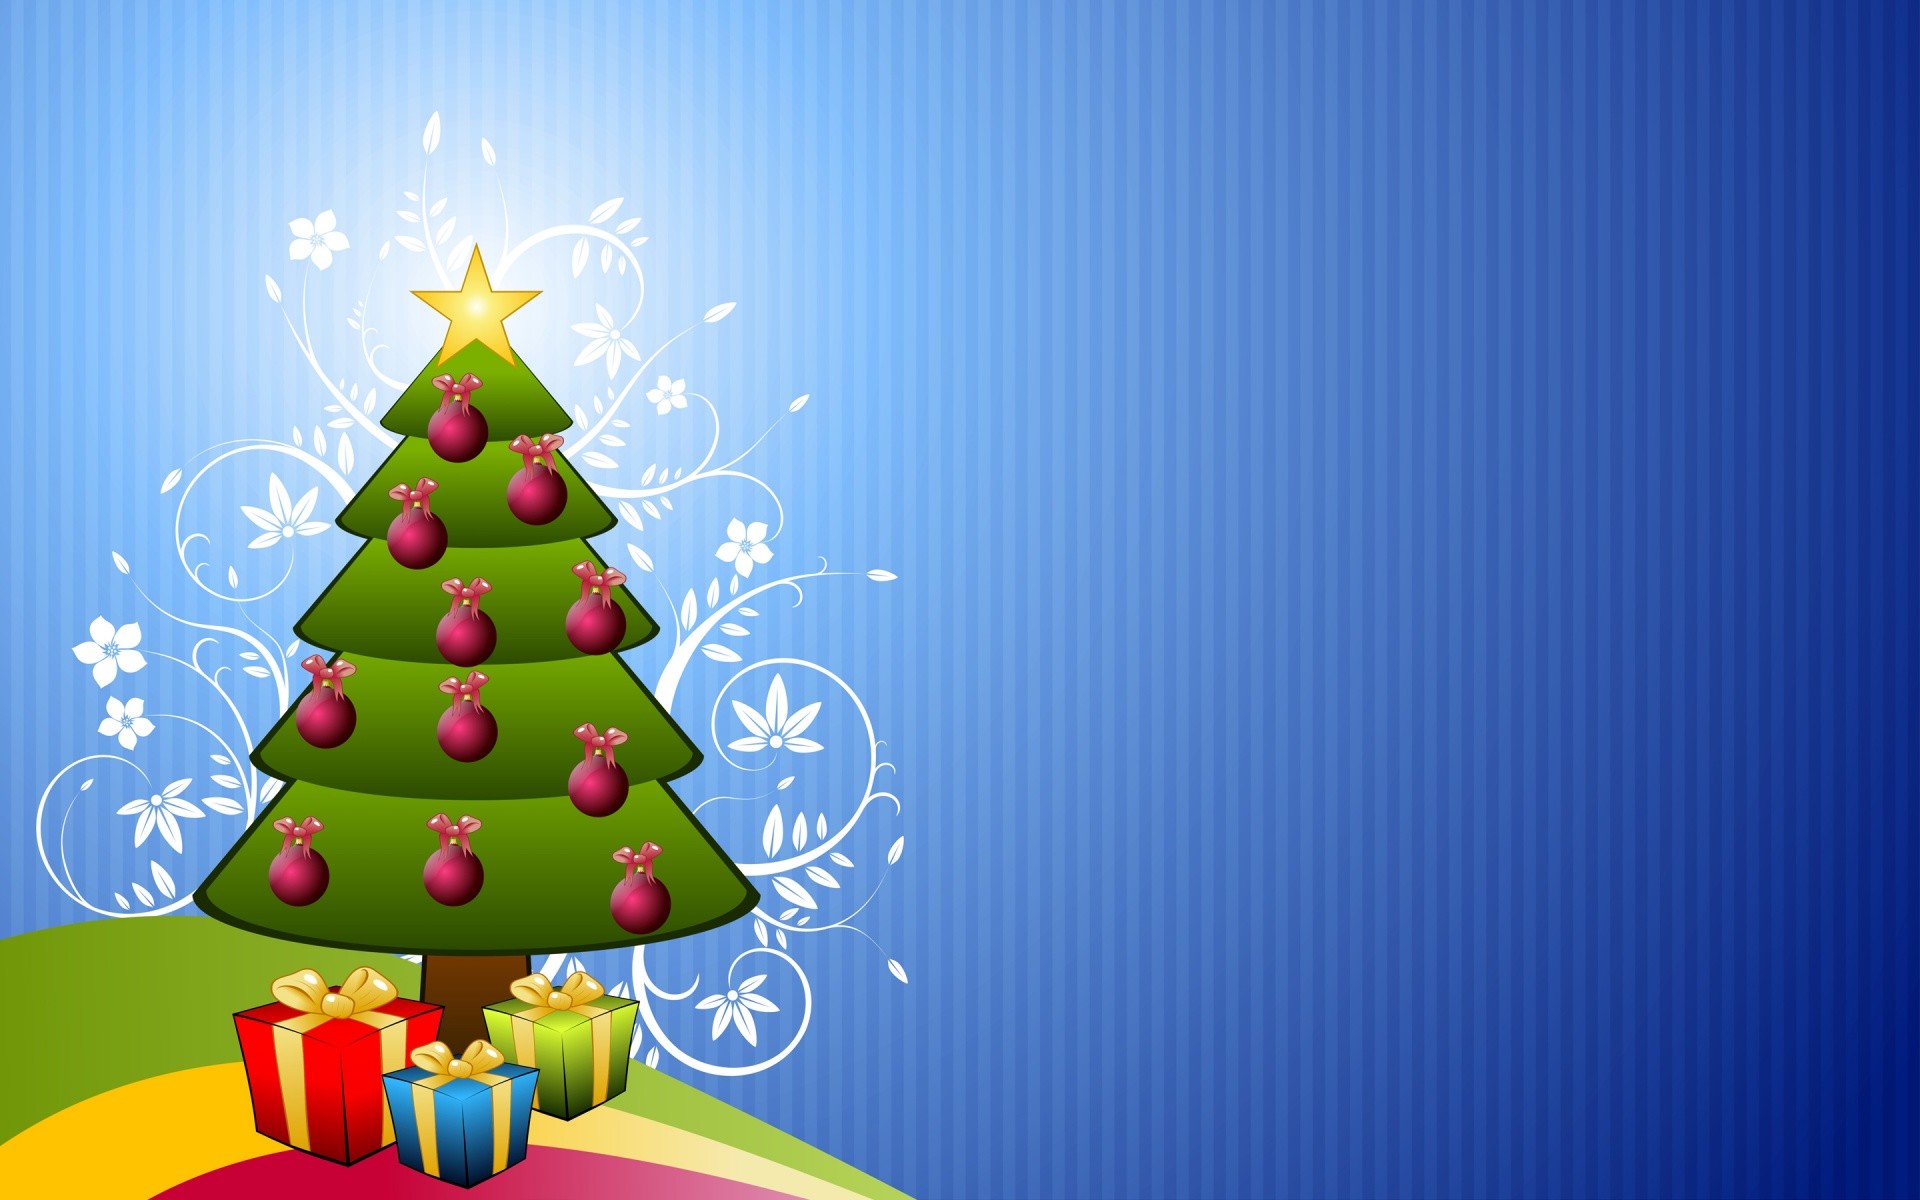 papel tapiz de navidad para niños,árbol de navidad,decoración navideña,navidad,decoración navideña,nochebuena